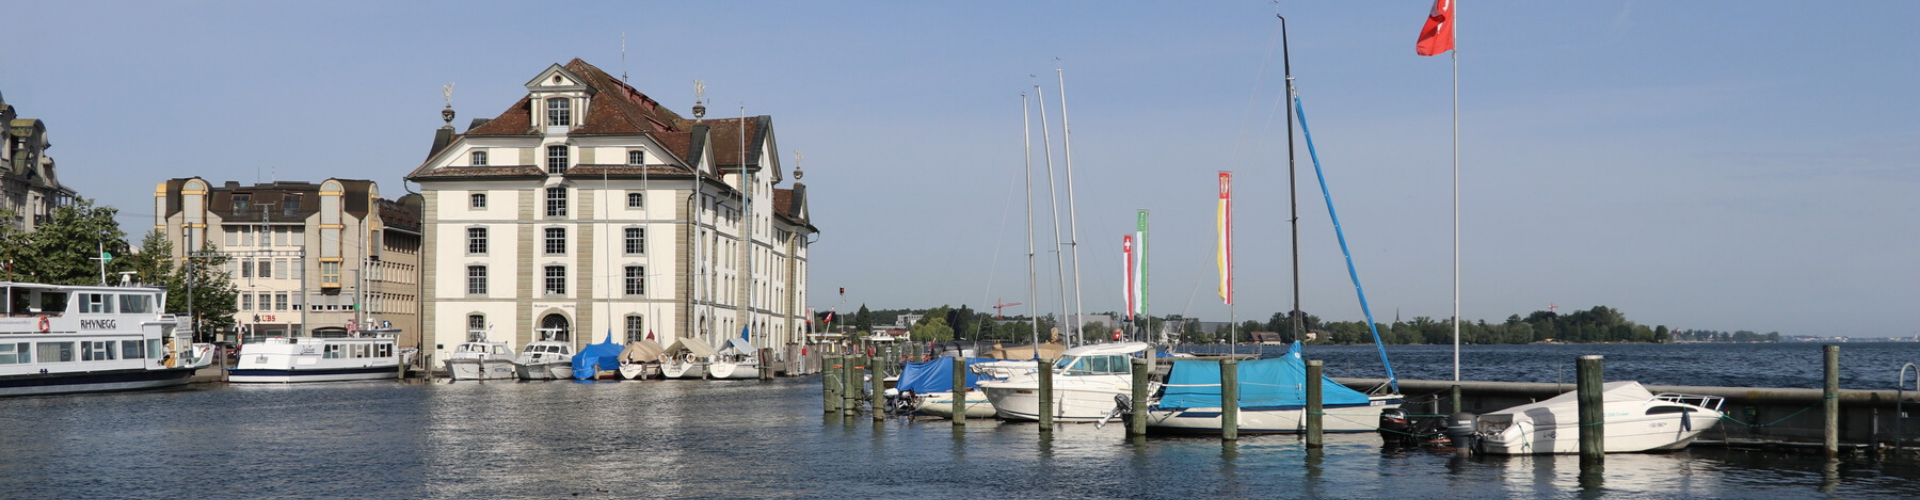 Foto Kornhaus und Hafen